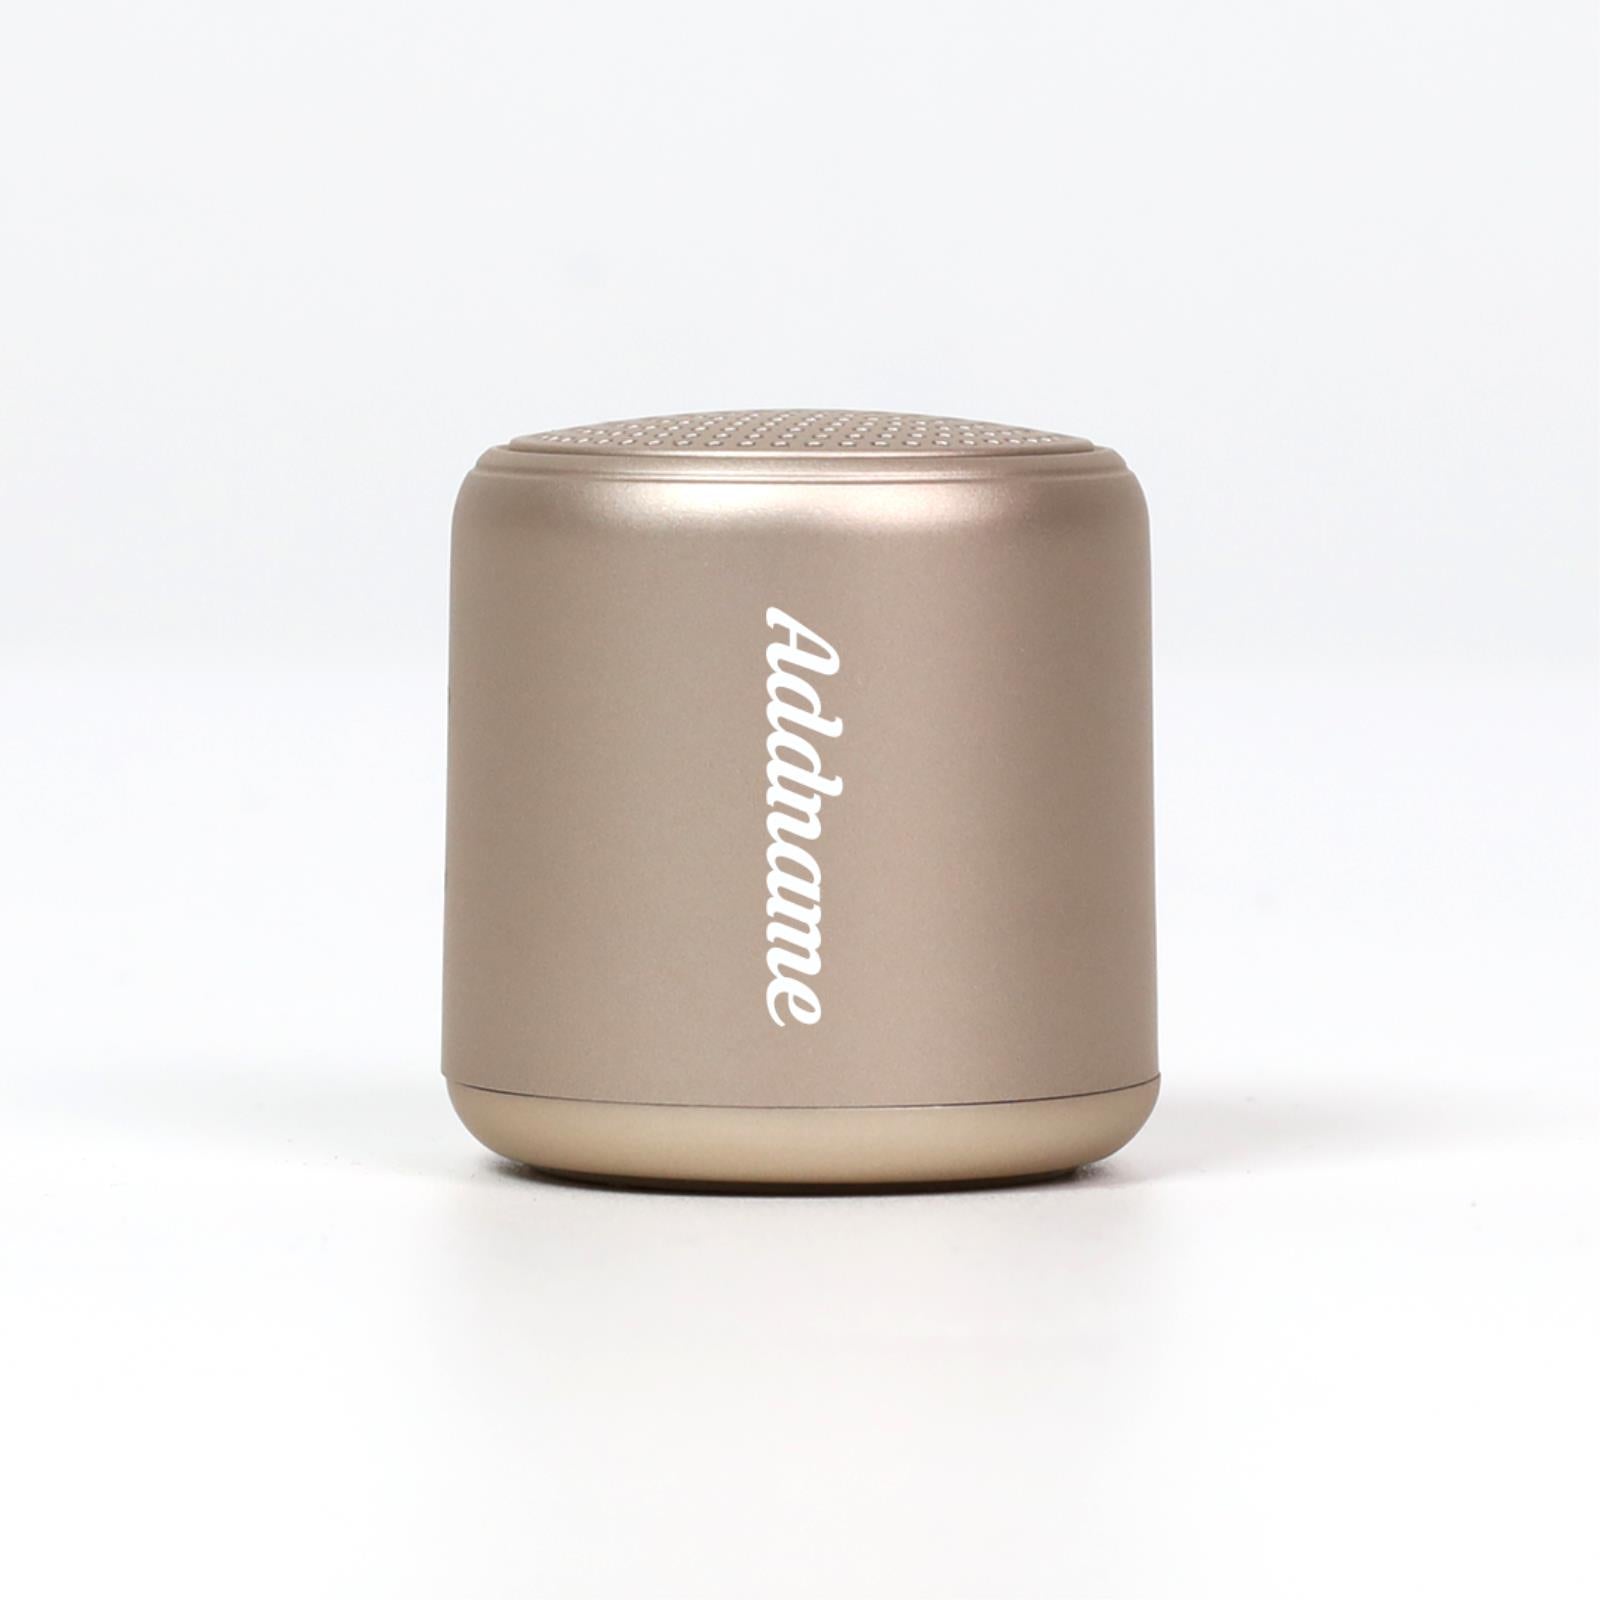 Altra Smart Mini Wireless Speaker - Campaigne Gold